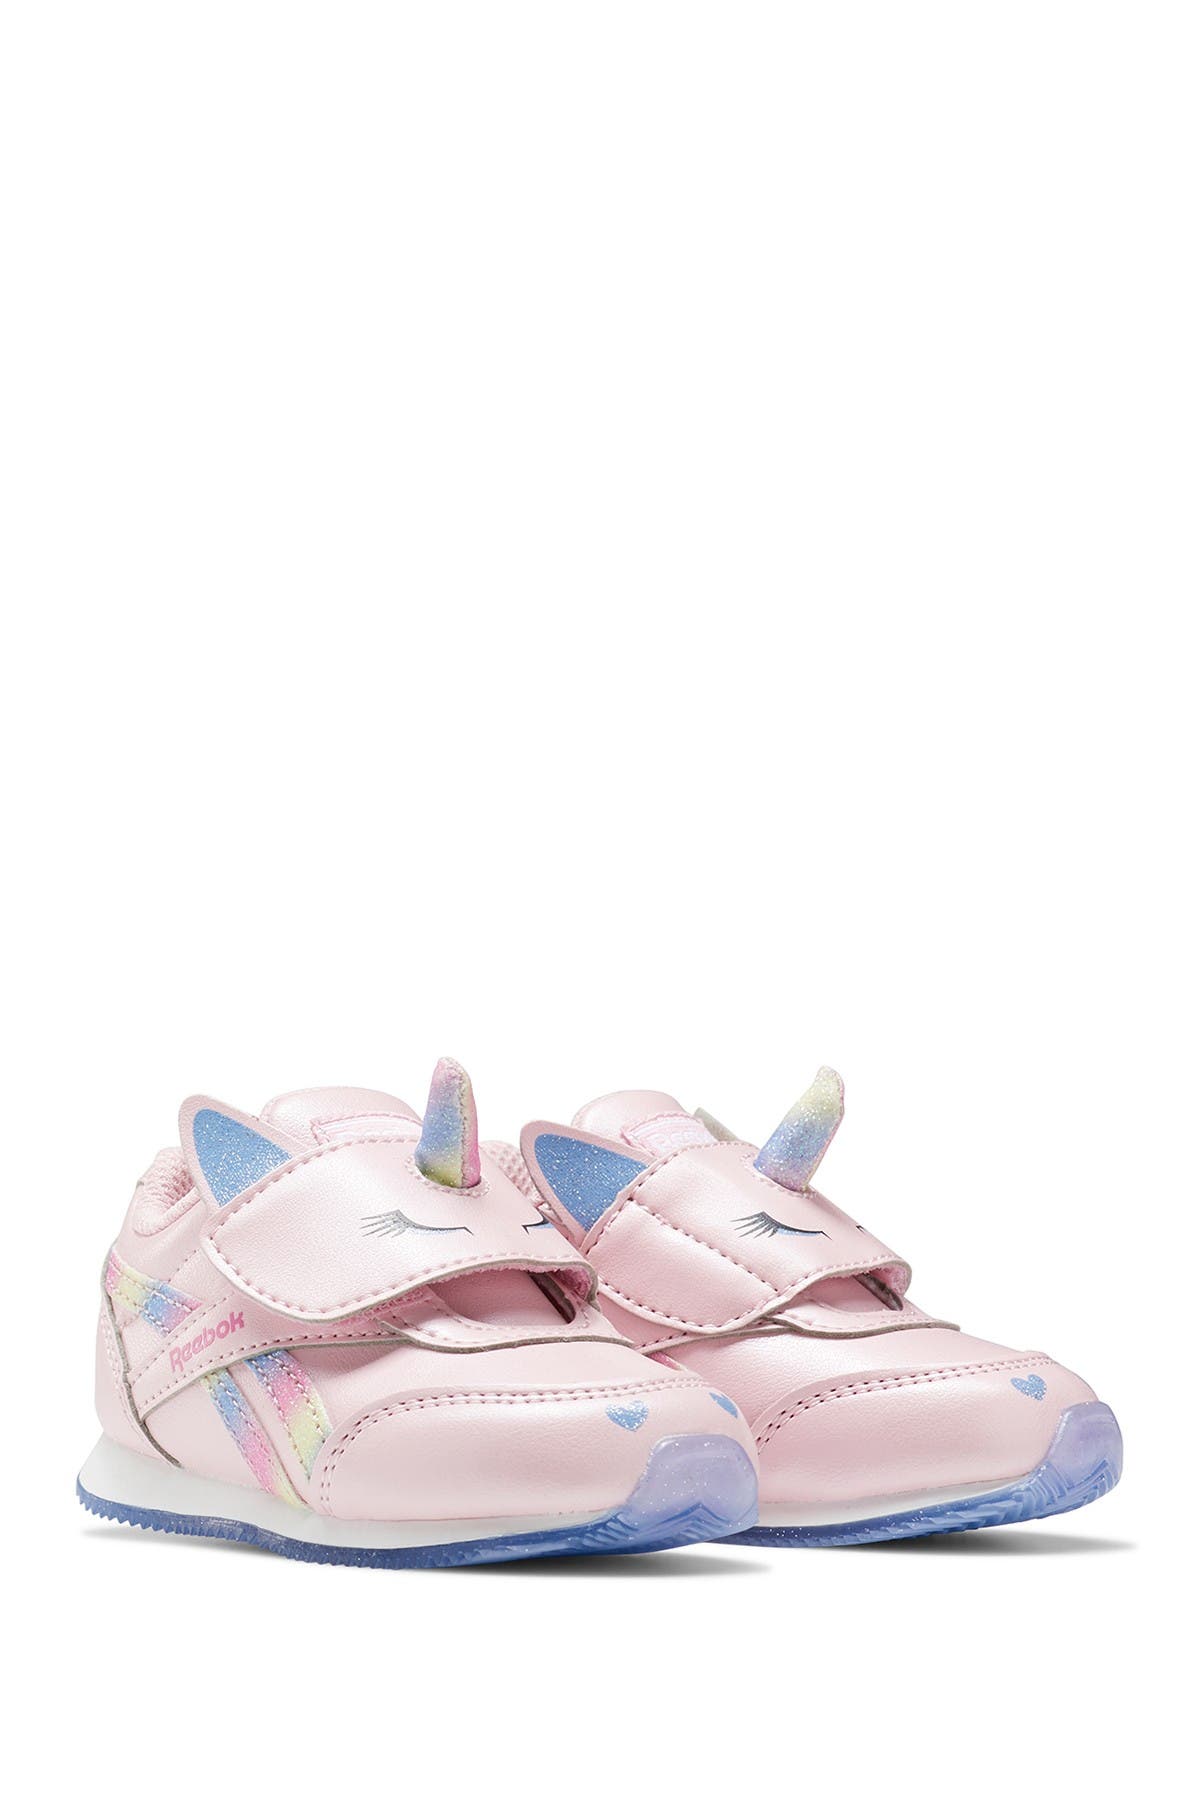 baby girl reebok shoes